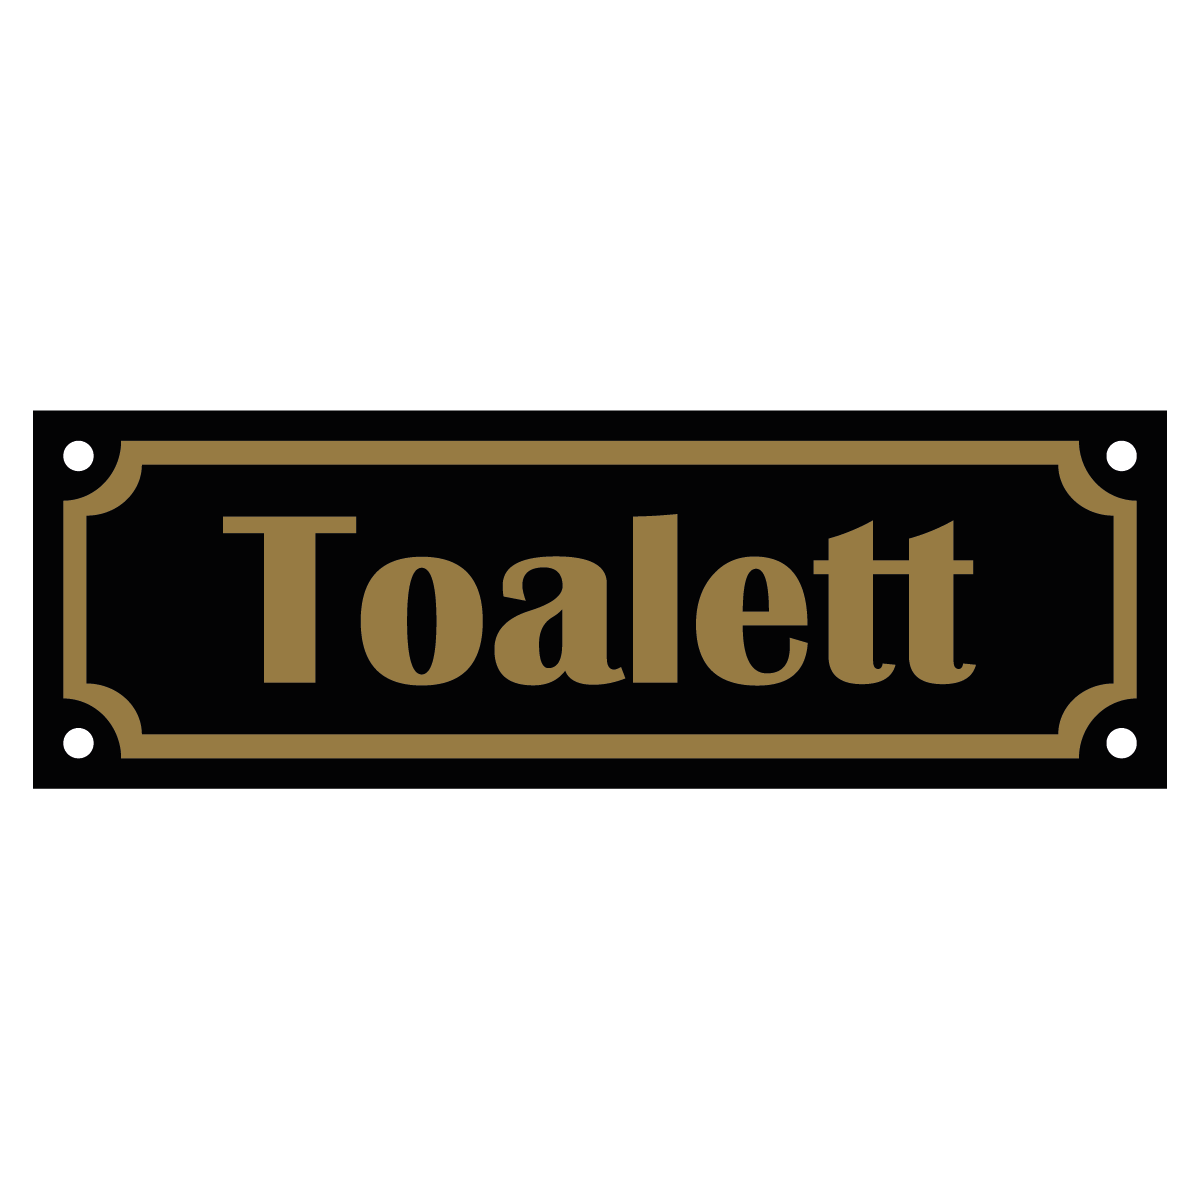 Toalett - Skylt - 150x50mm - Svart - Guld